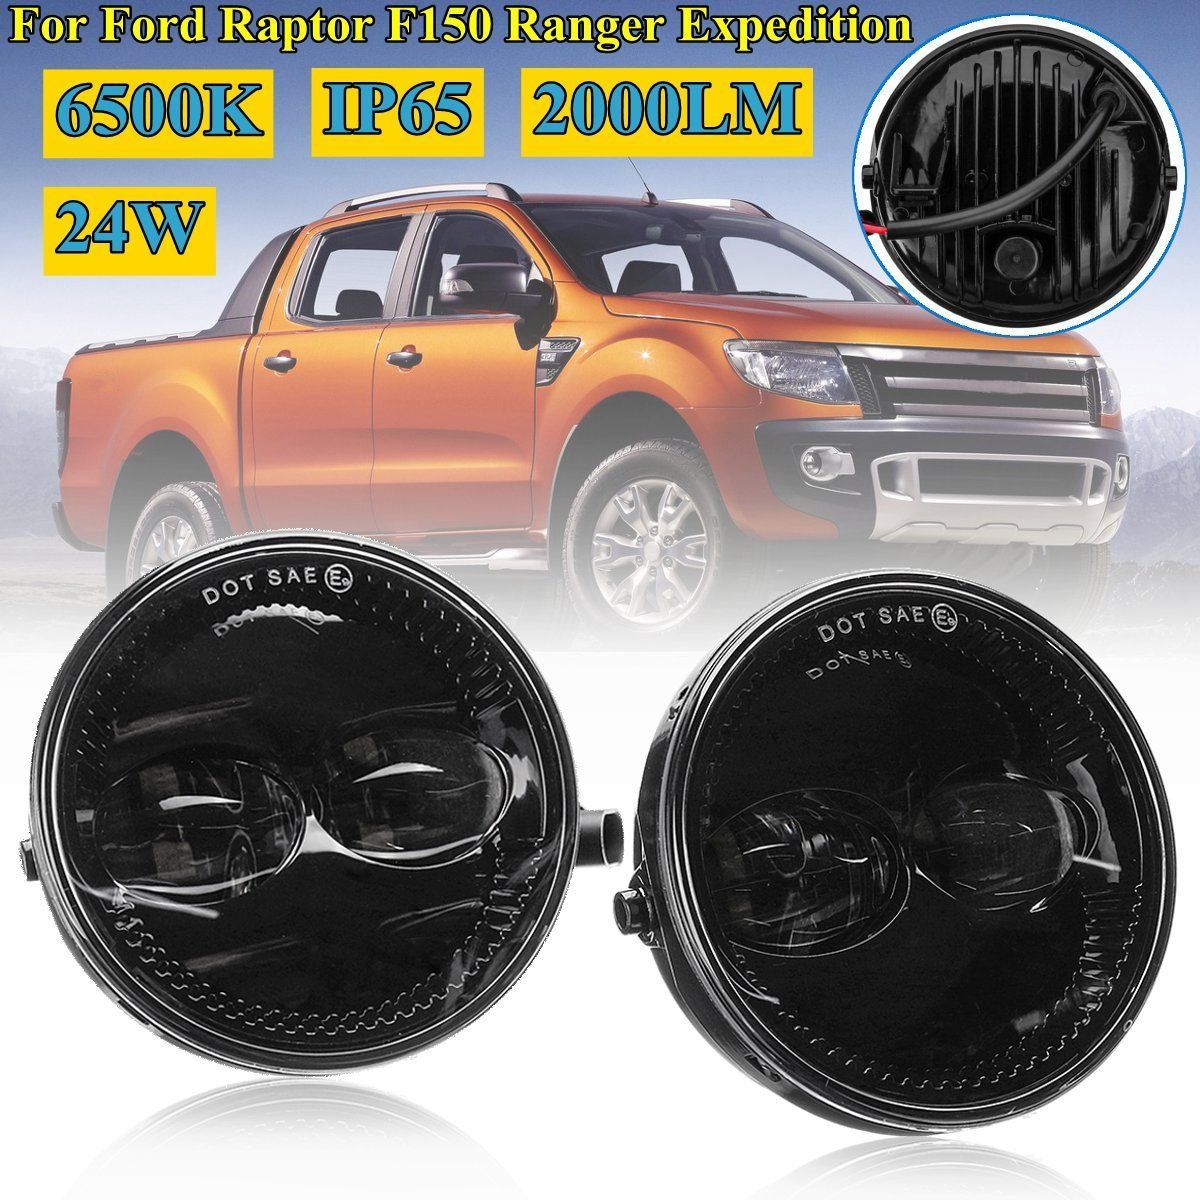 Car-LED-Front-Fog-Lights-Lamps-6500K-Pair-for-Ford-Raptor-F150-Ranger-Expedition-2007-2014-1464019